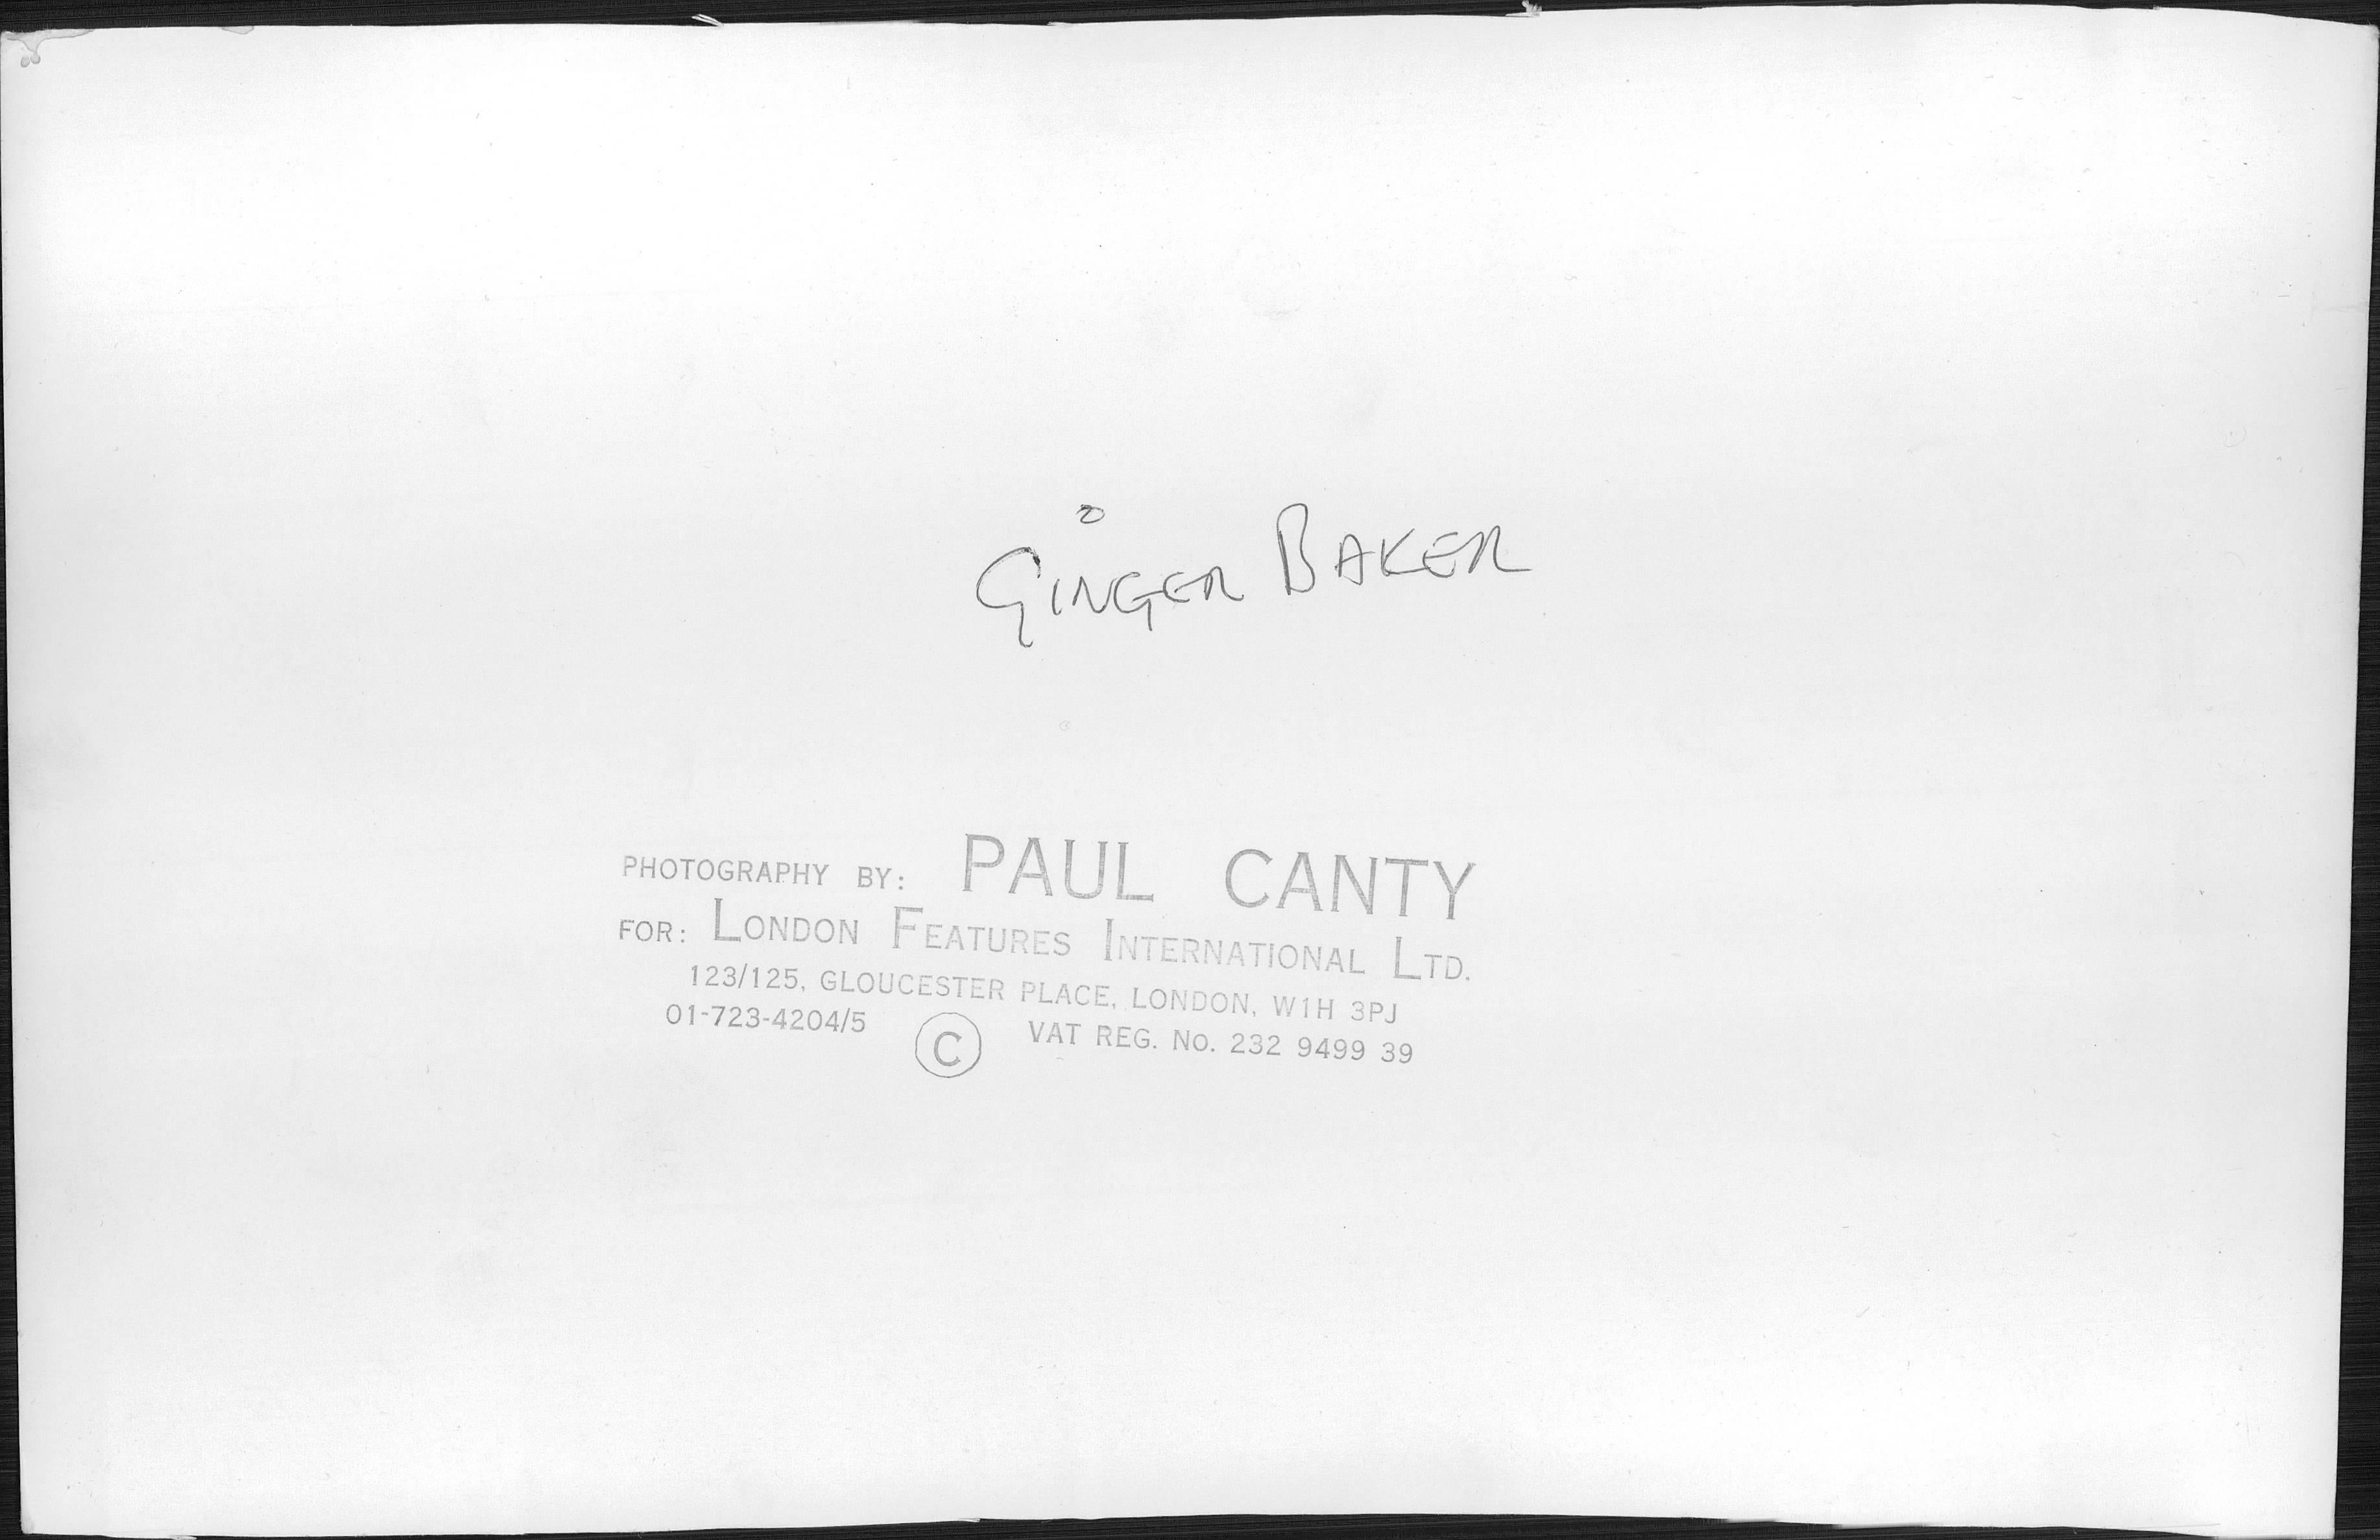 Ginger Baker Closeup Vintage Original Photograph - Black Portrait Photograph by Paul Canty